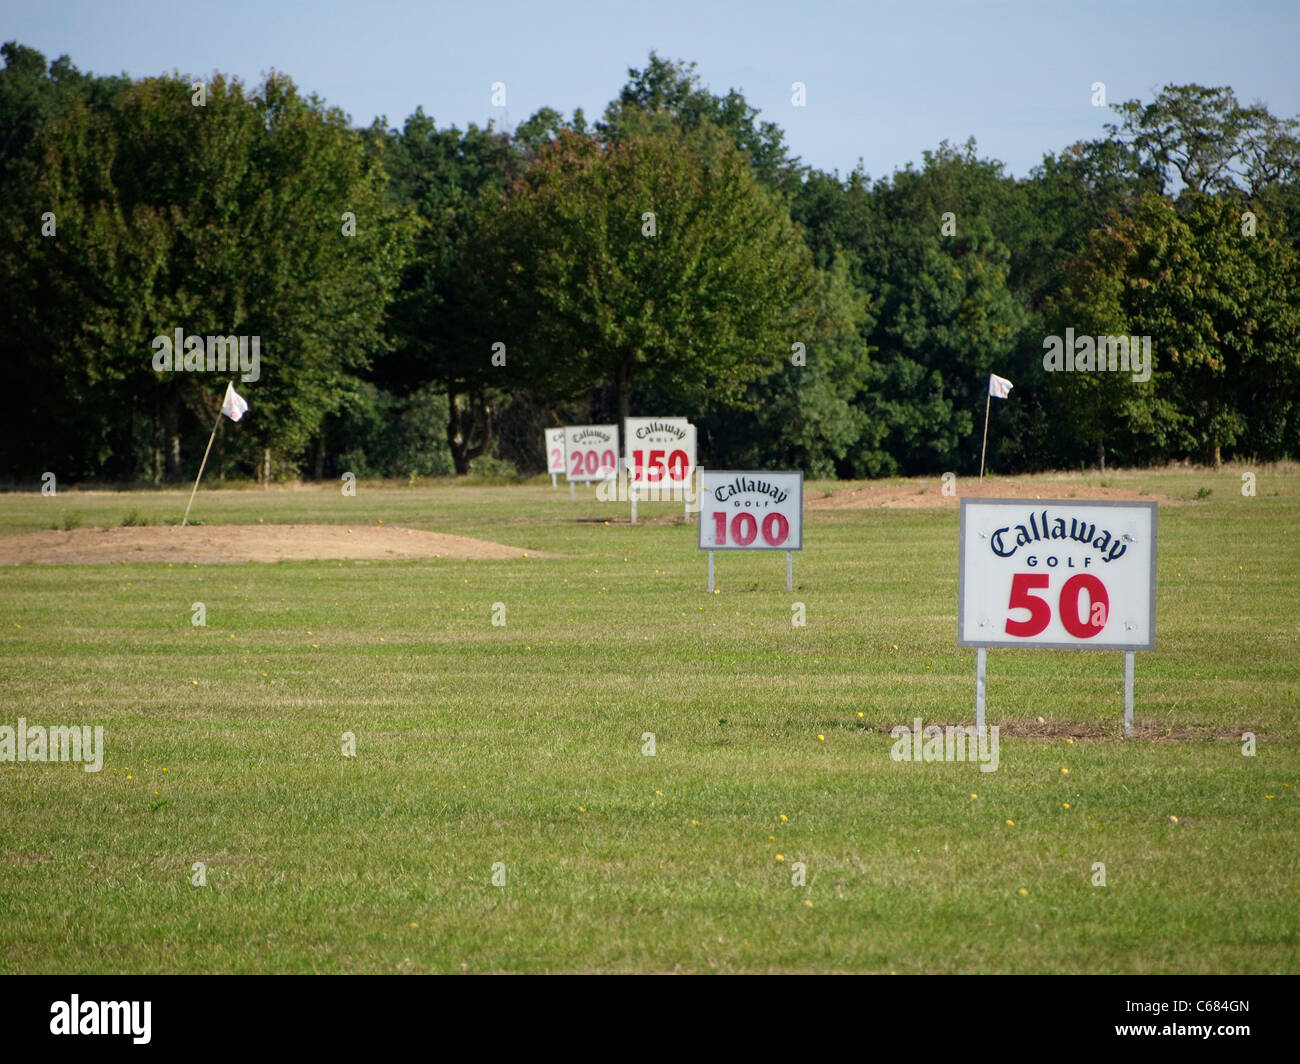 Golf tee off corso di formazione con scala distanze. Domaine Saint Hilaire golf, Roiffé, Valle della Loira, Francia Foto Stock